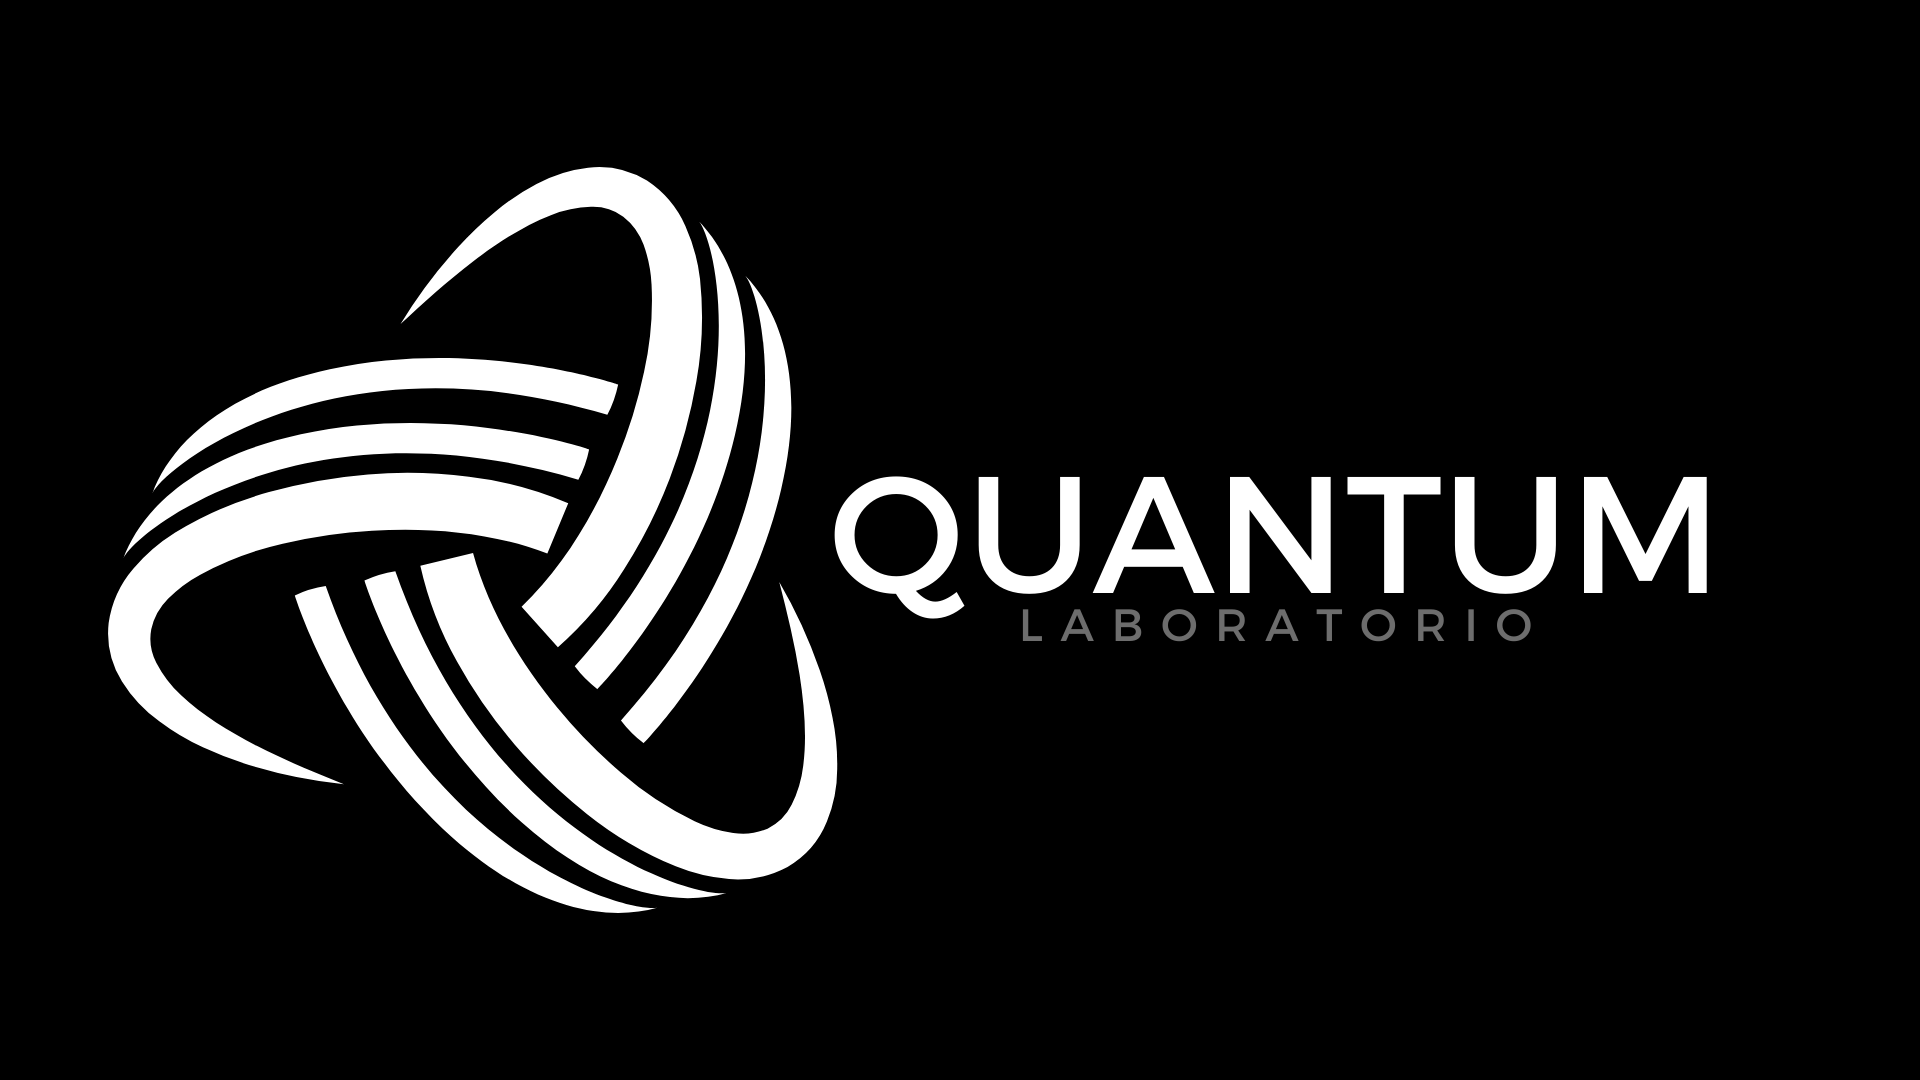 Quantum Laboratório